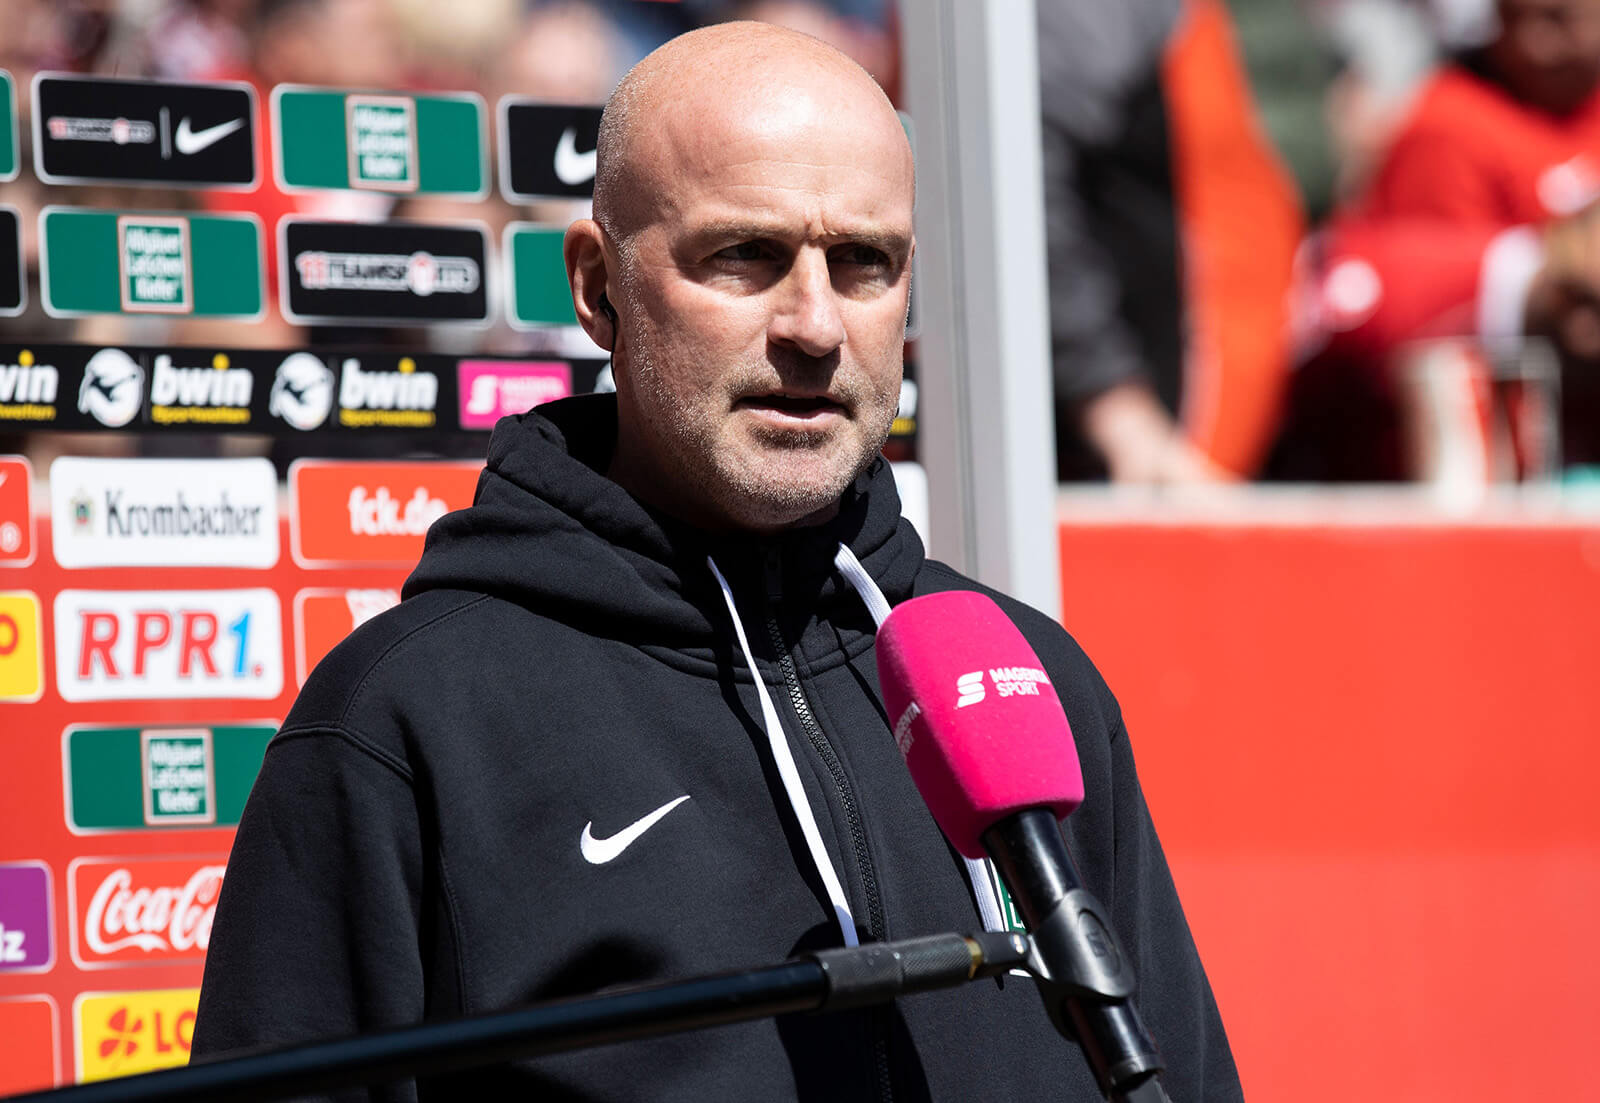  Marco Antwerpen ist ab sofort neuer Chefcoach des Drittligisten SV Waldhof Mannheim 07. Bild: IMAGO / Kirchner-Media